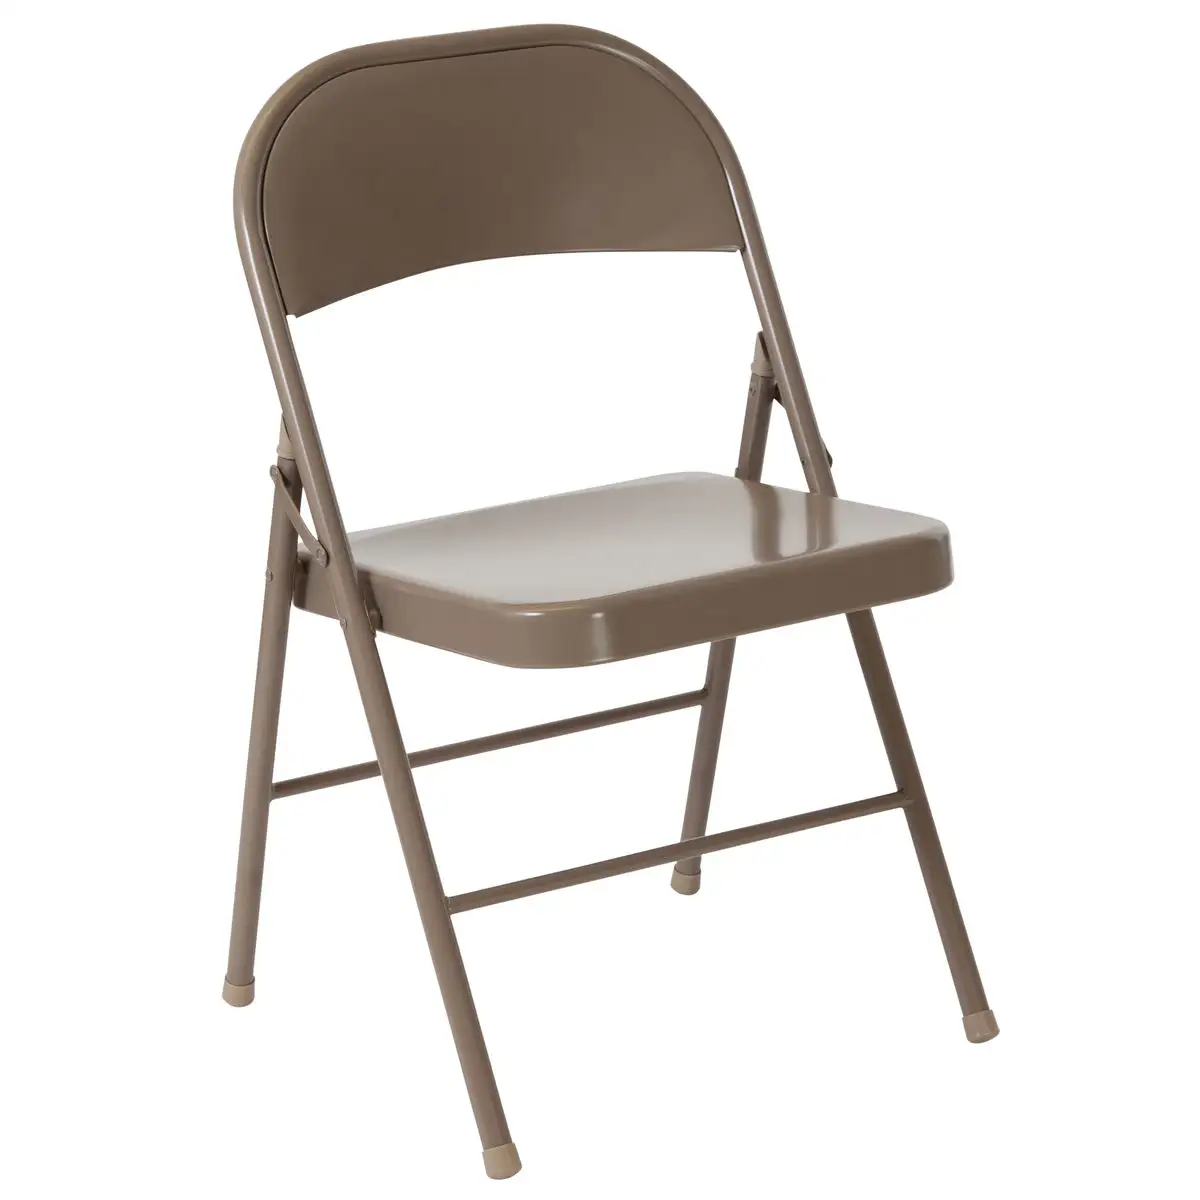 Промышленный напольный стальной обеденный железный металлический складной стул из фибролитов средей плотности, в офисе, на открытом воздухе, Отдых на природе, желтовато-коричневый, серый; Цвет черный, красный; Большой размер, 4/6 пакет